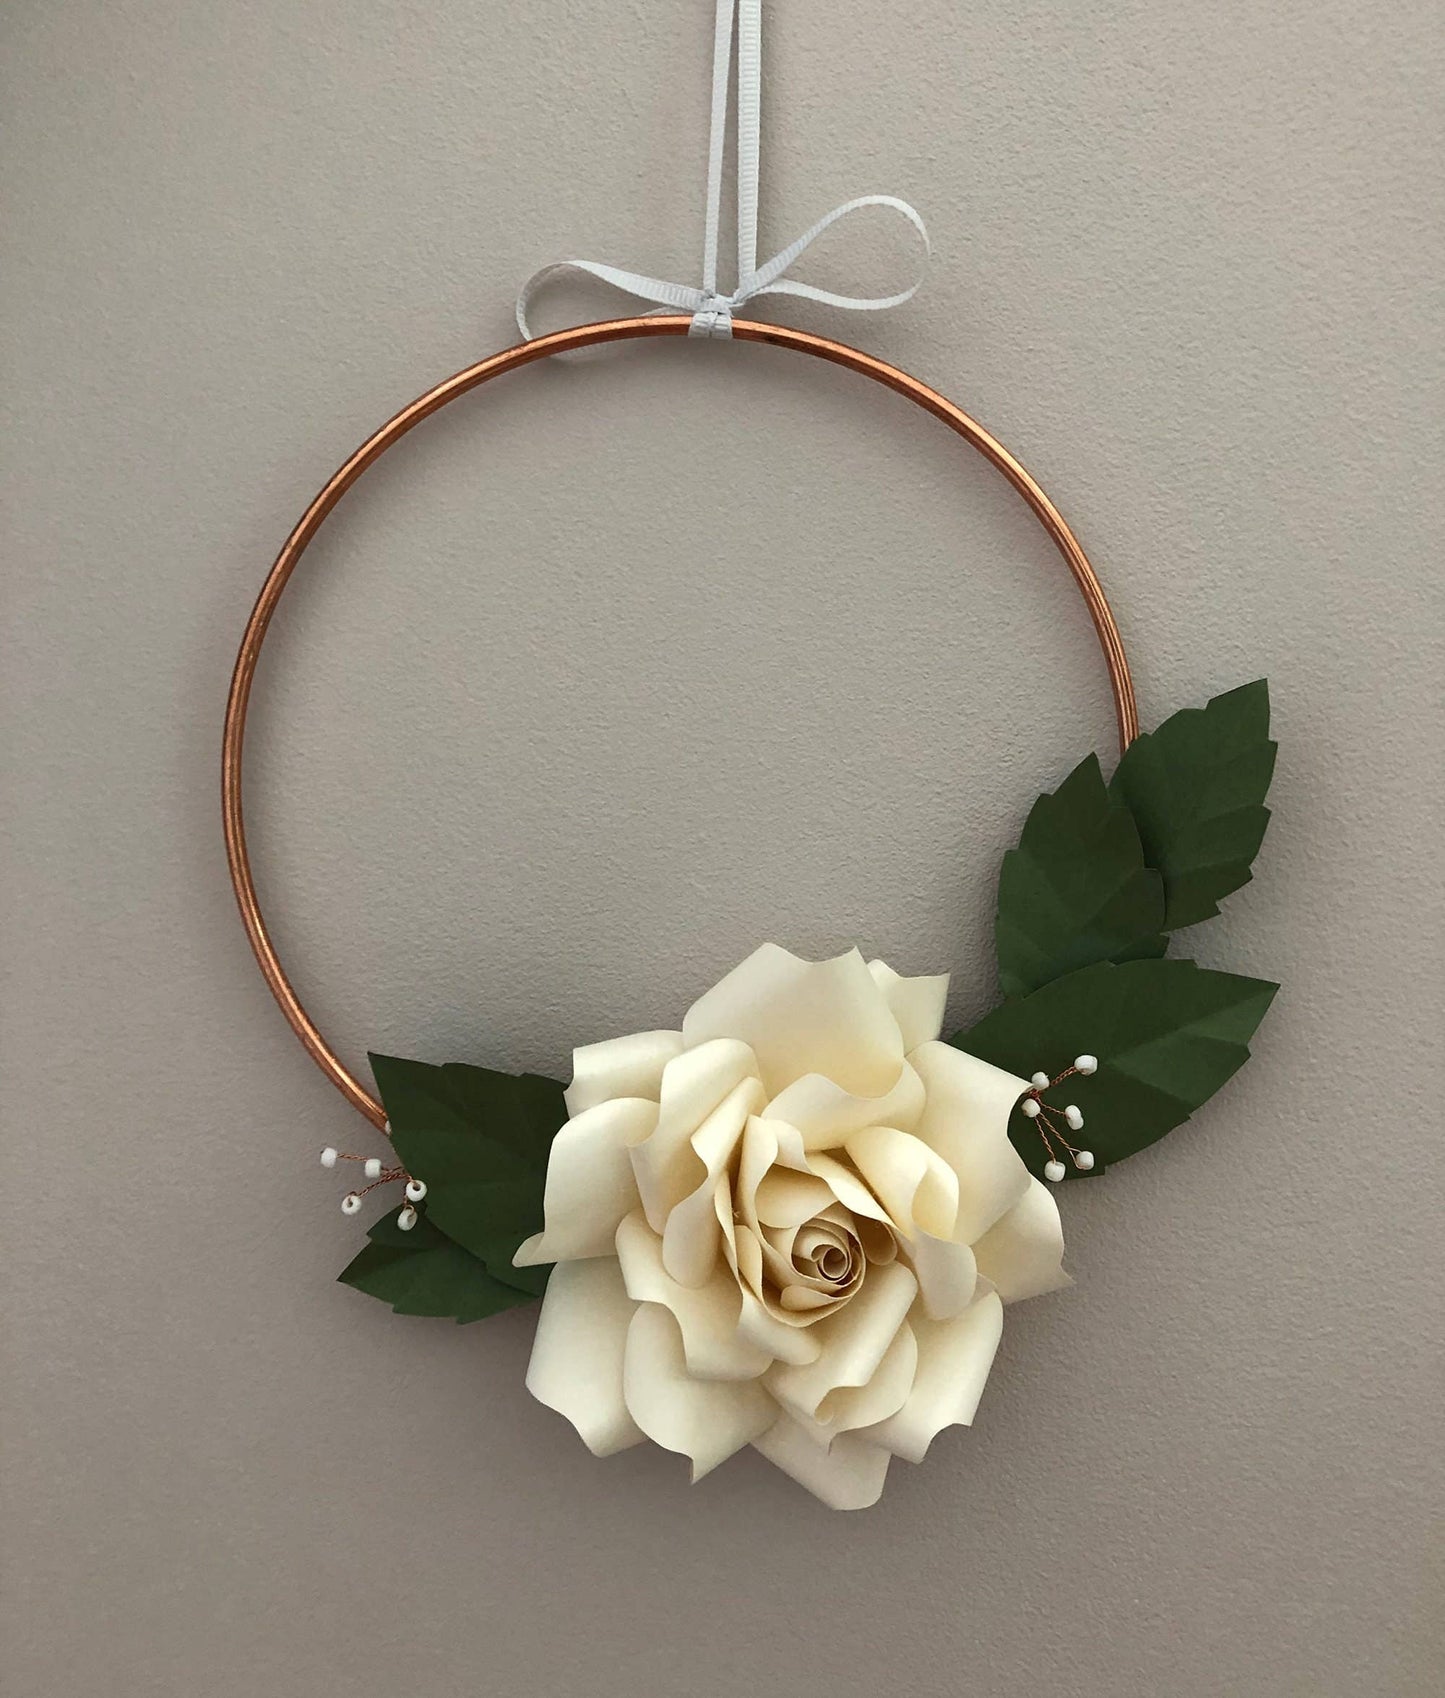 Paper Flower Kit - Rose Wreath